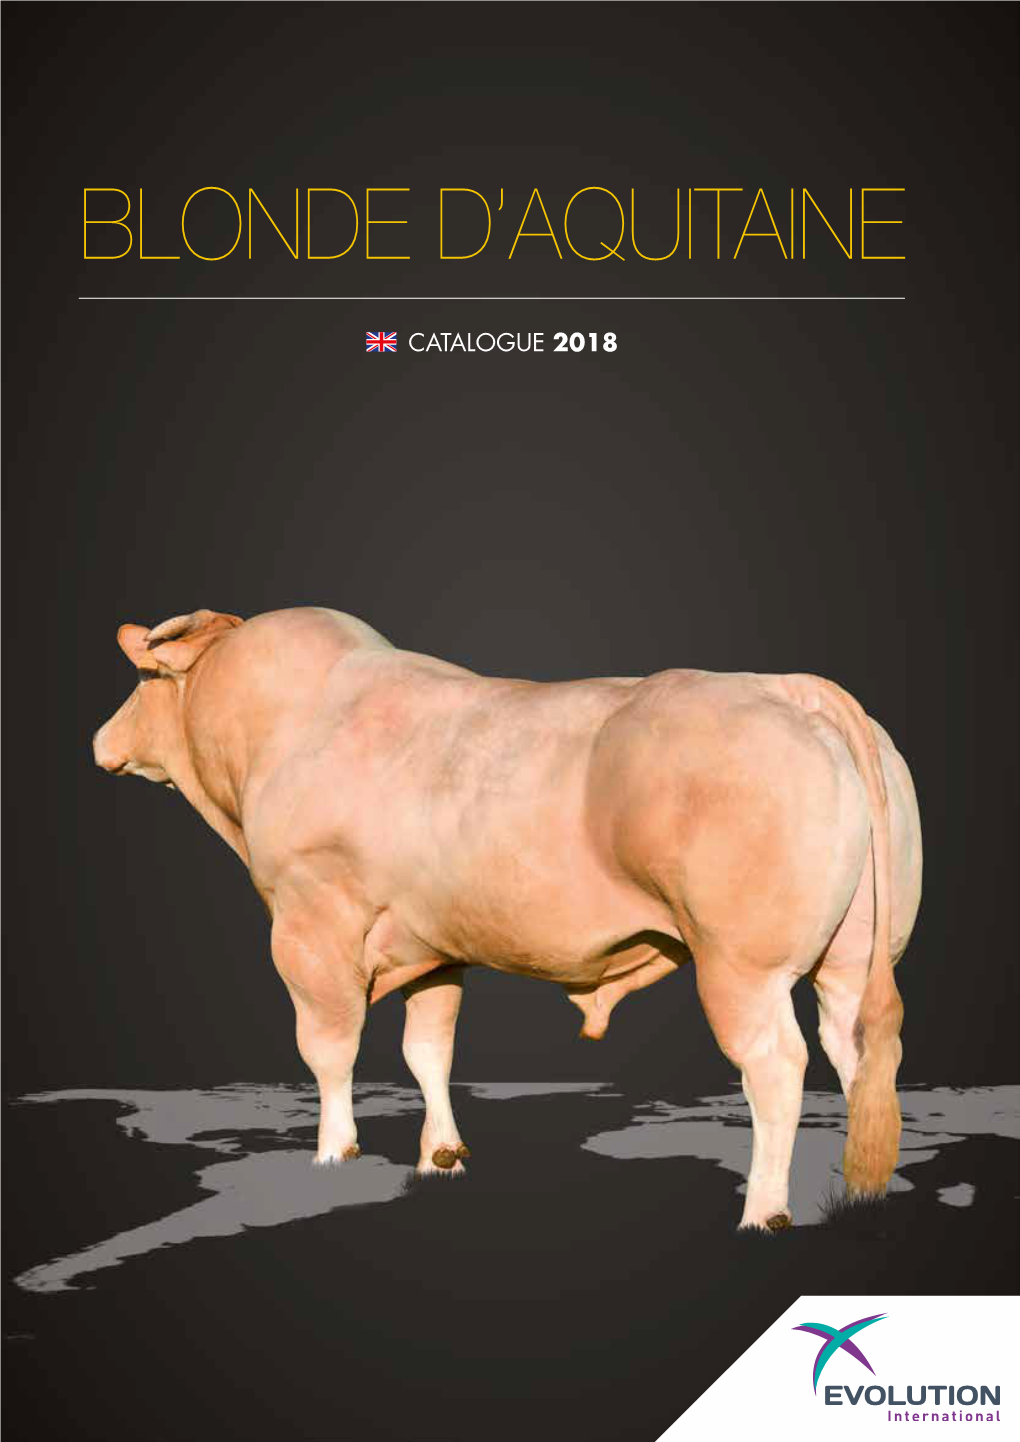 Blonde D'aquitaine